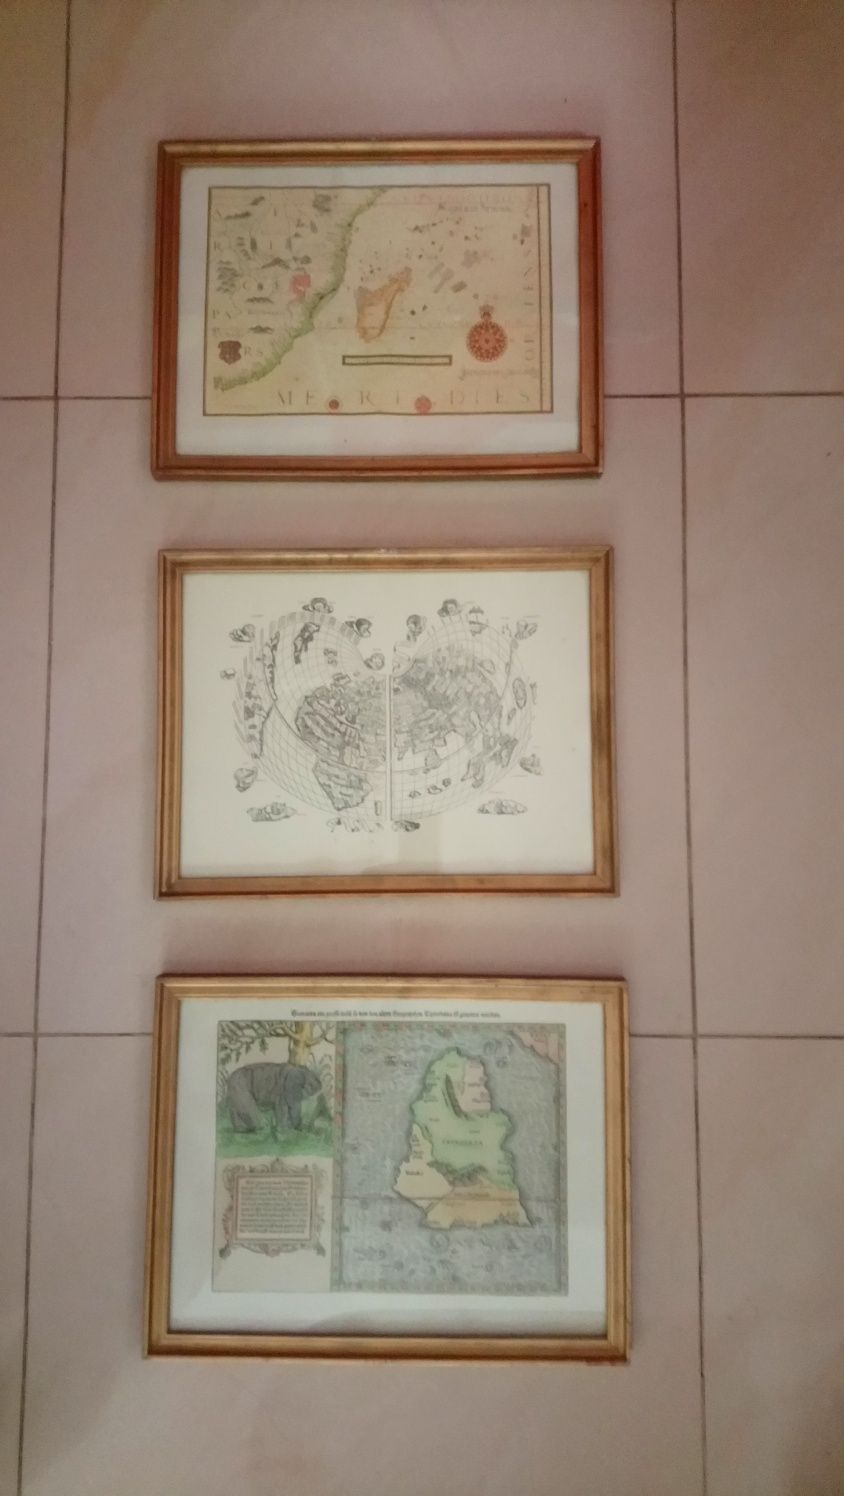 3 reprodukcje starych map  oprawione w ramki  za szkłem